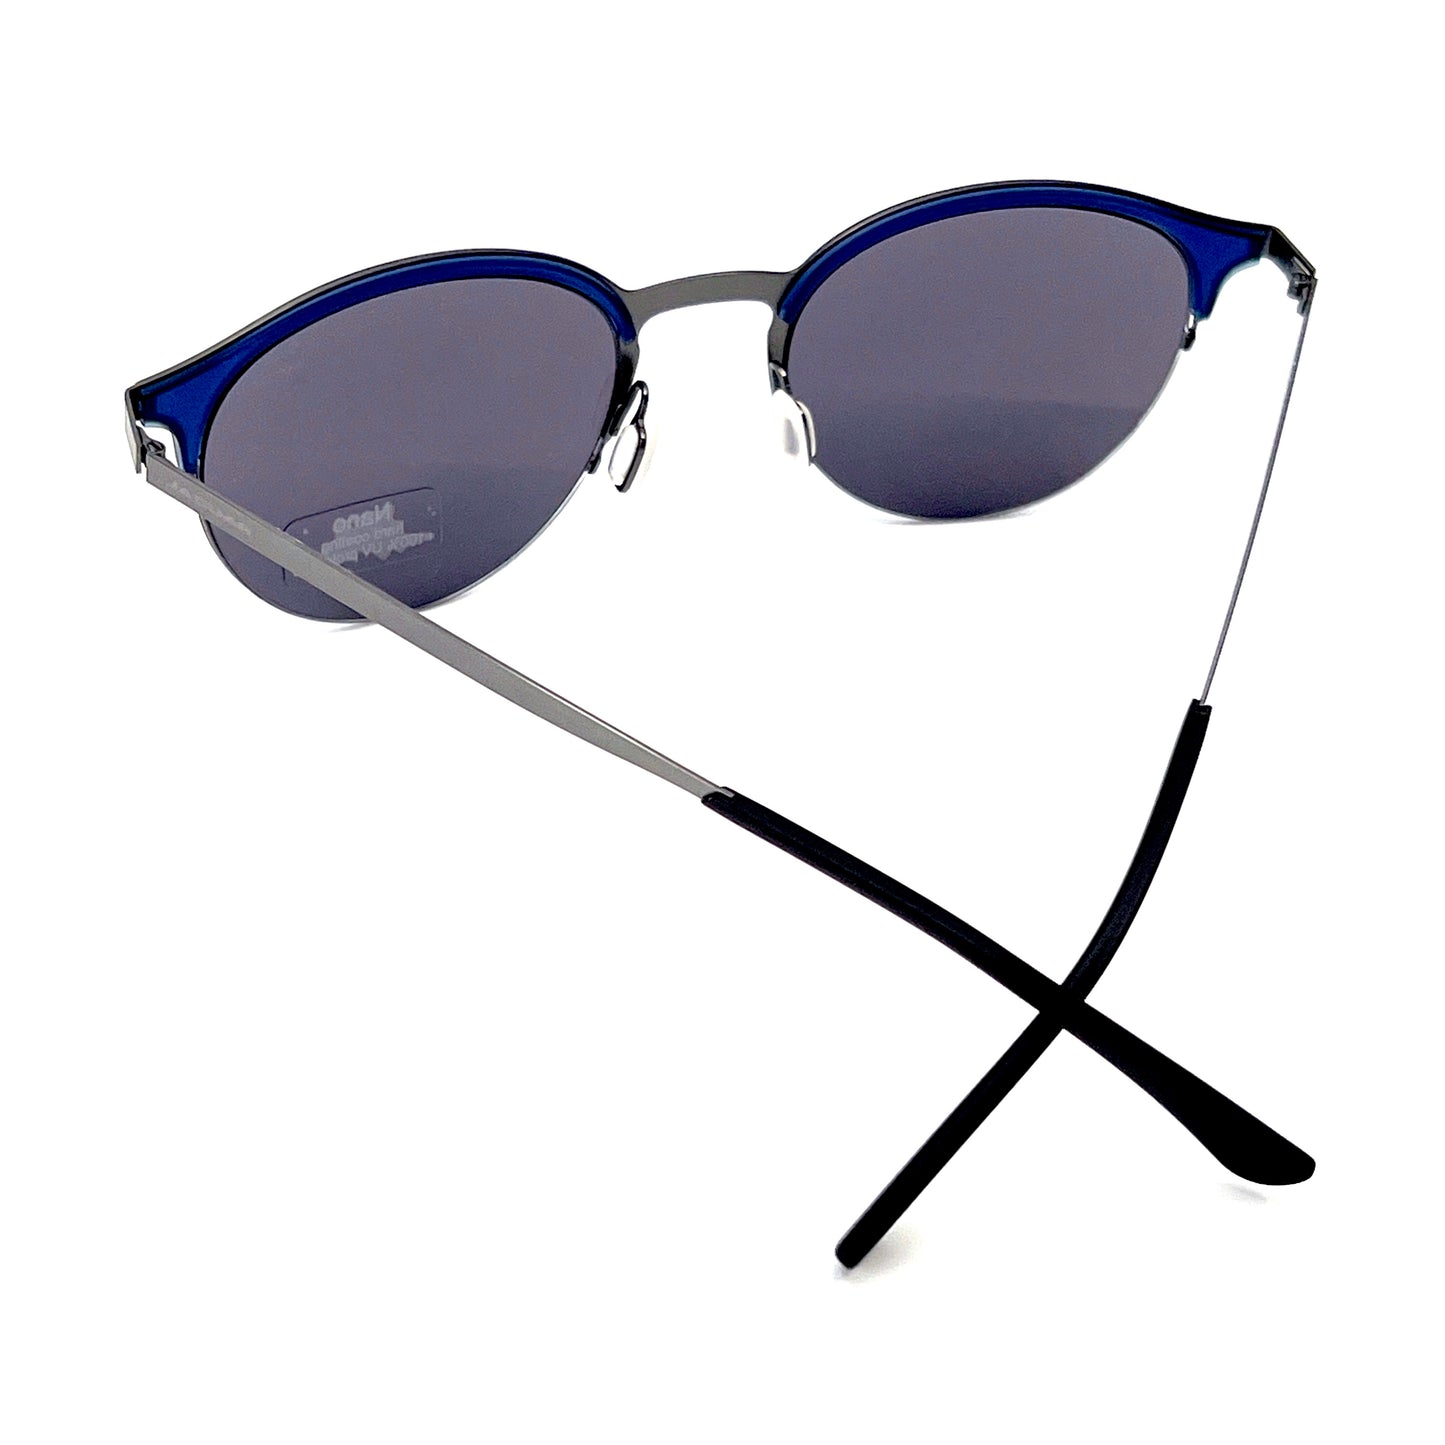 JAGUAR Sunglasses Mod.37814-3100